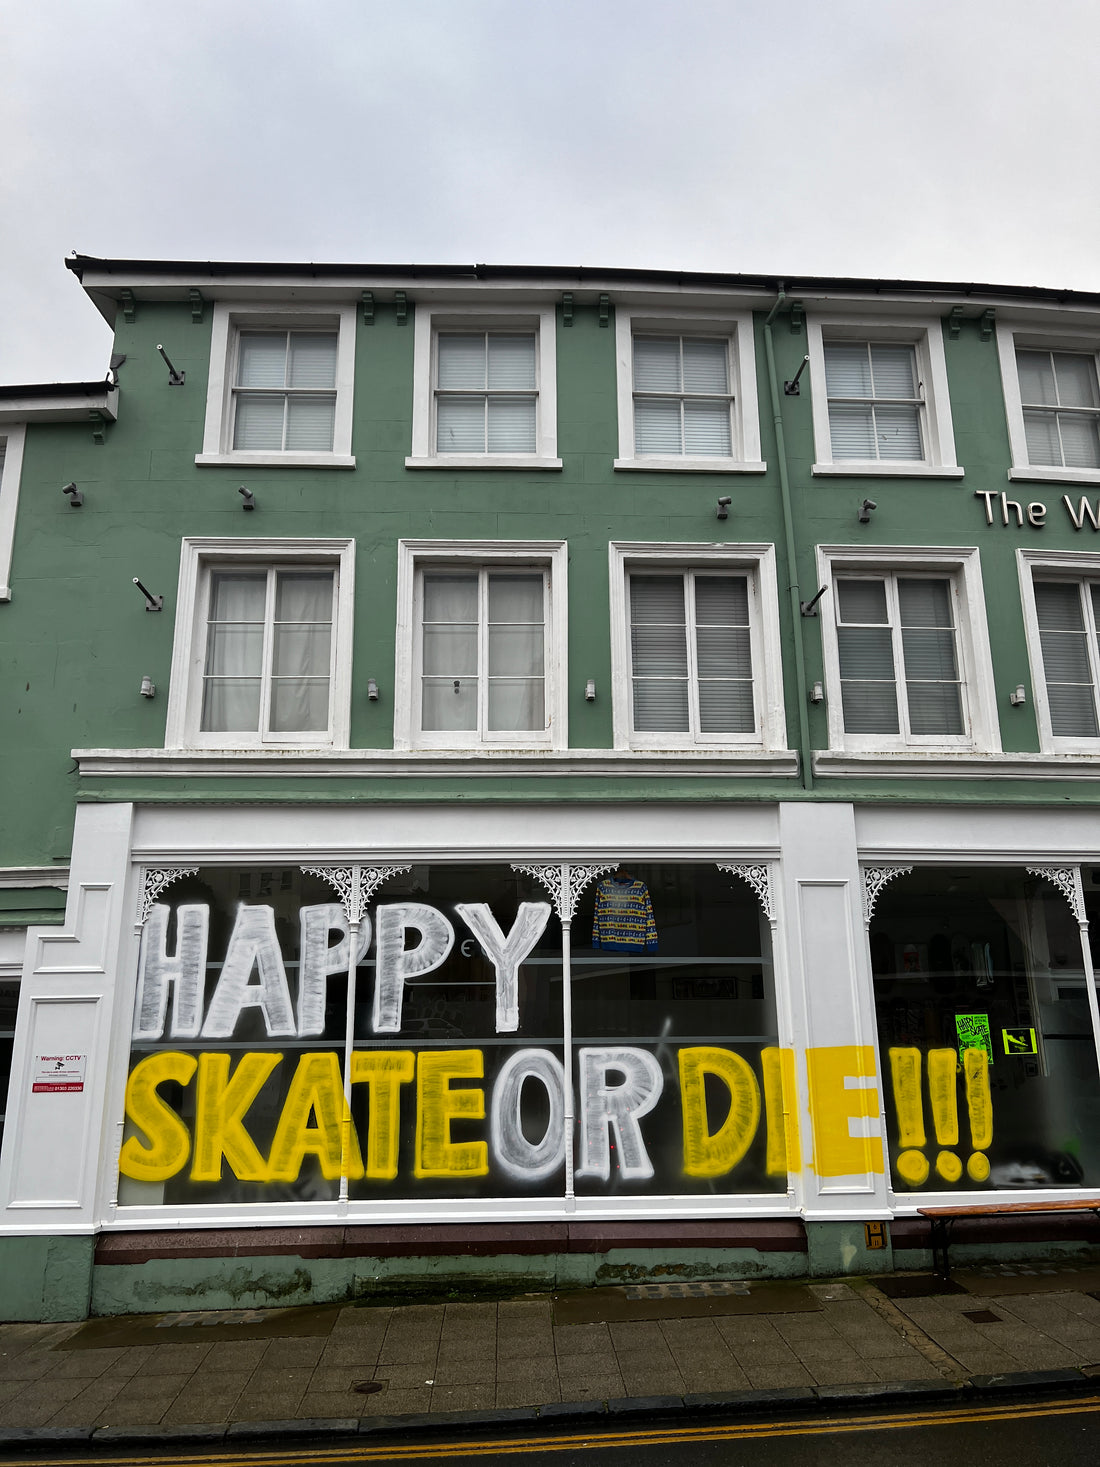 Happy Skate or Die!!!